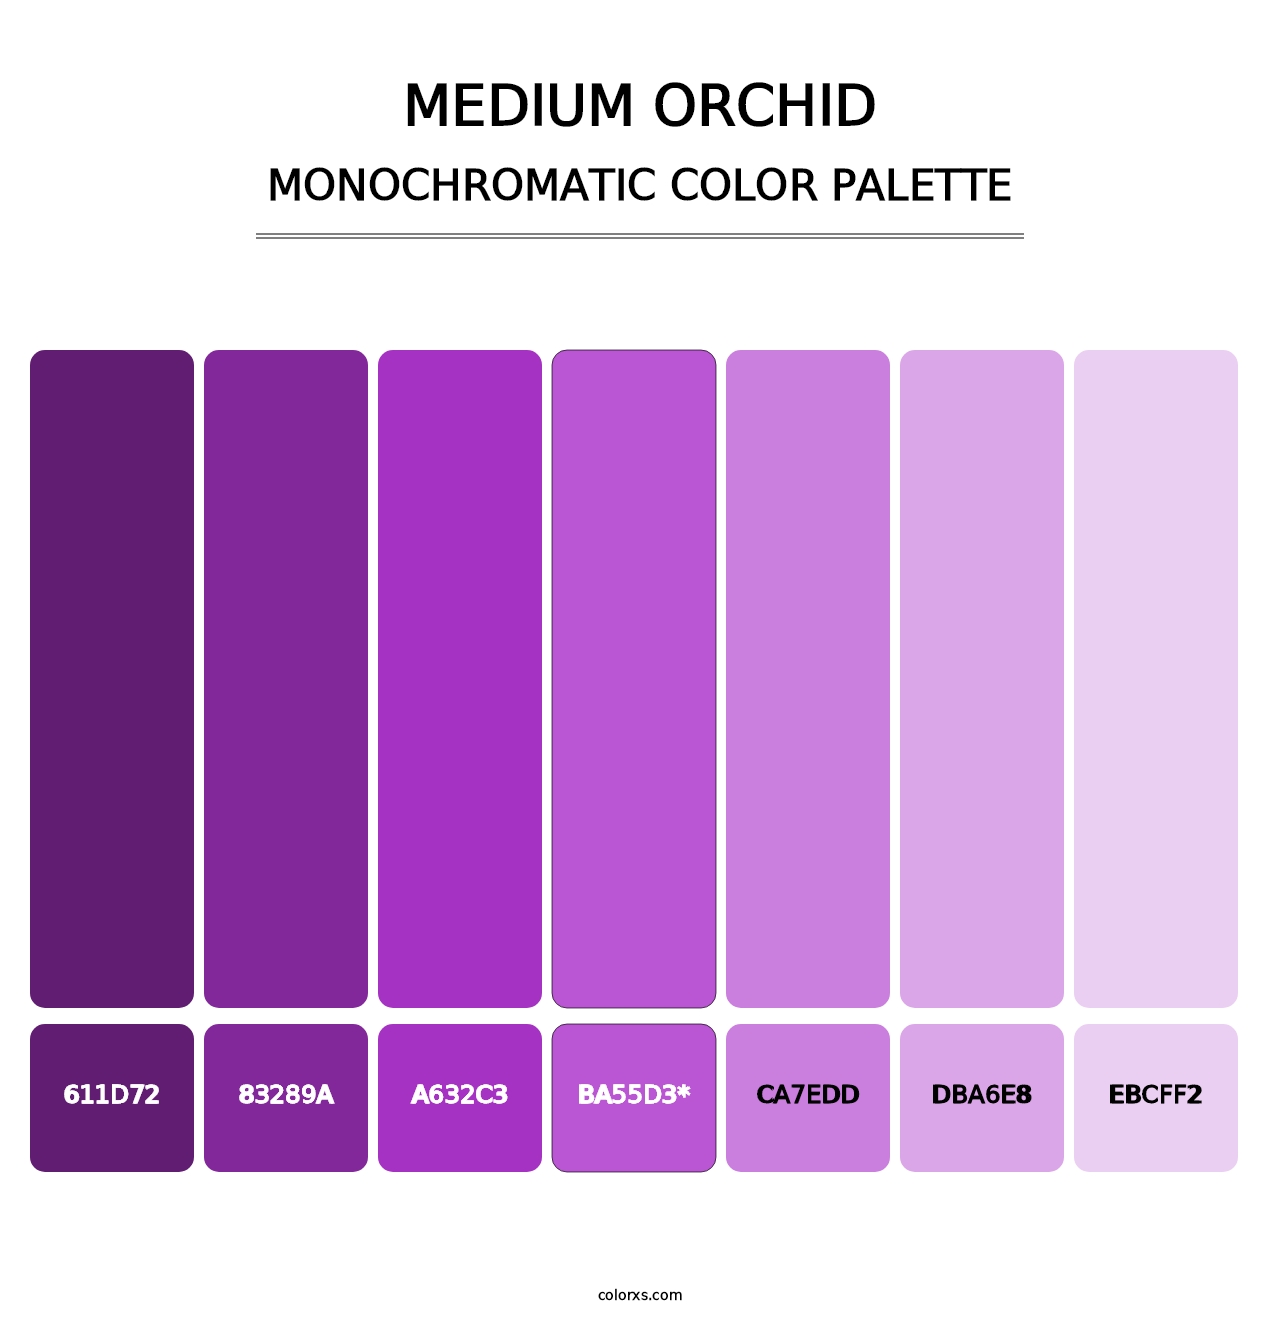 Medium Orchid - Monochromatic Color Palette